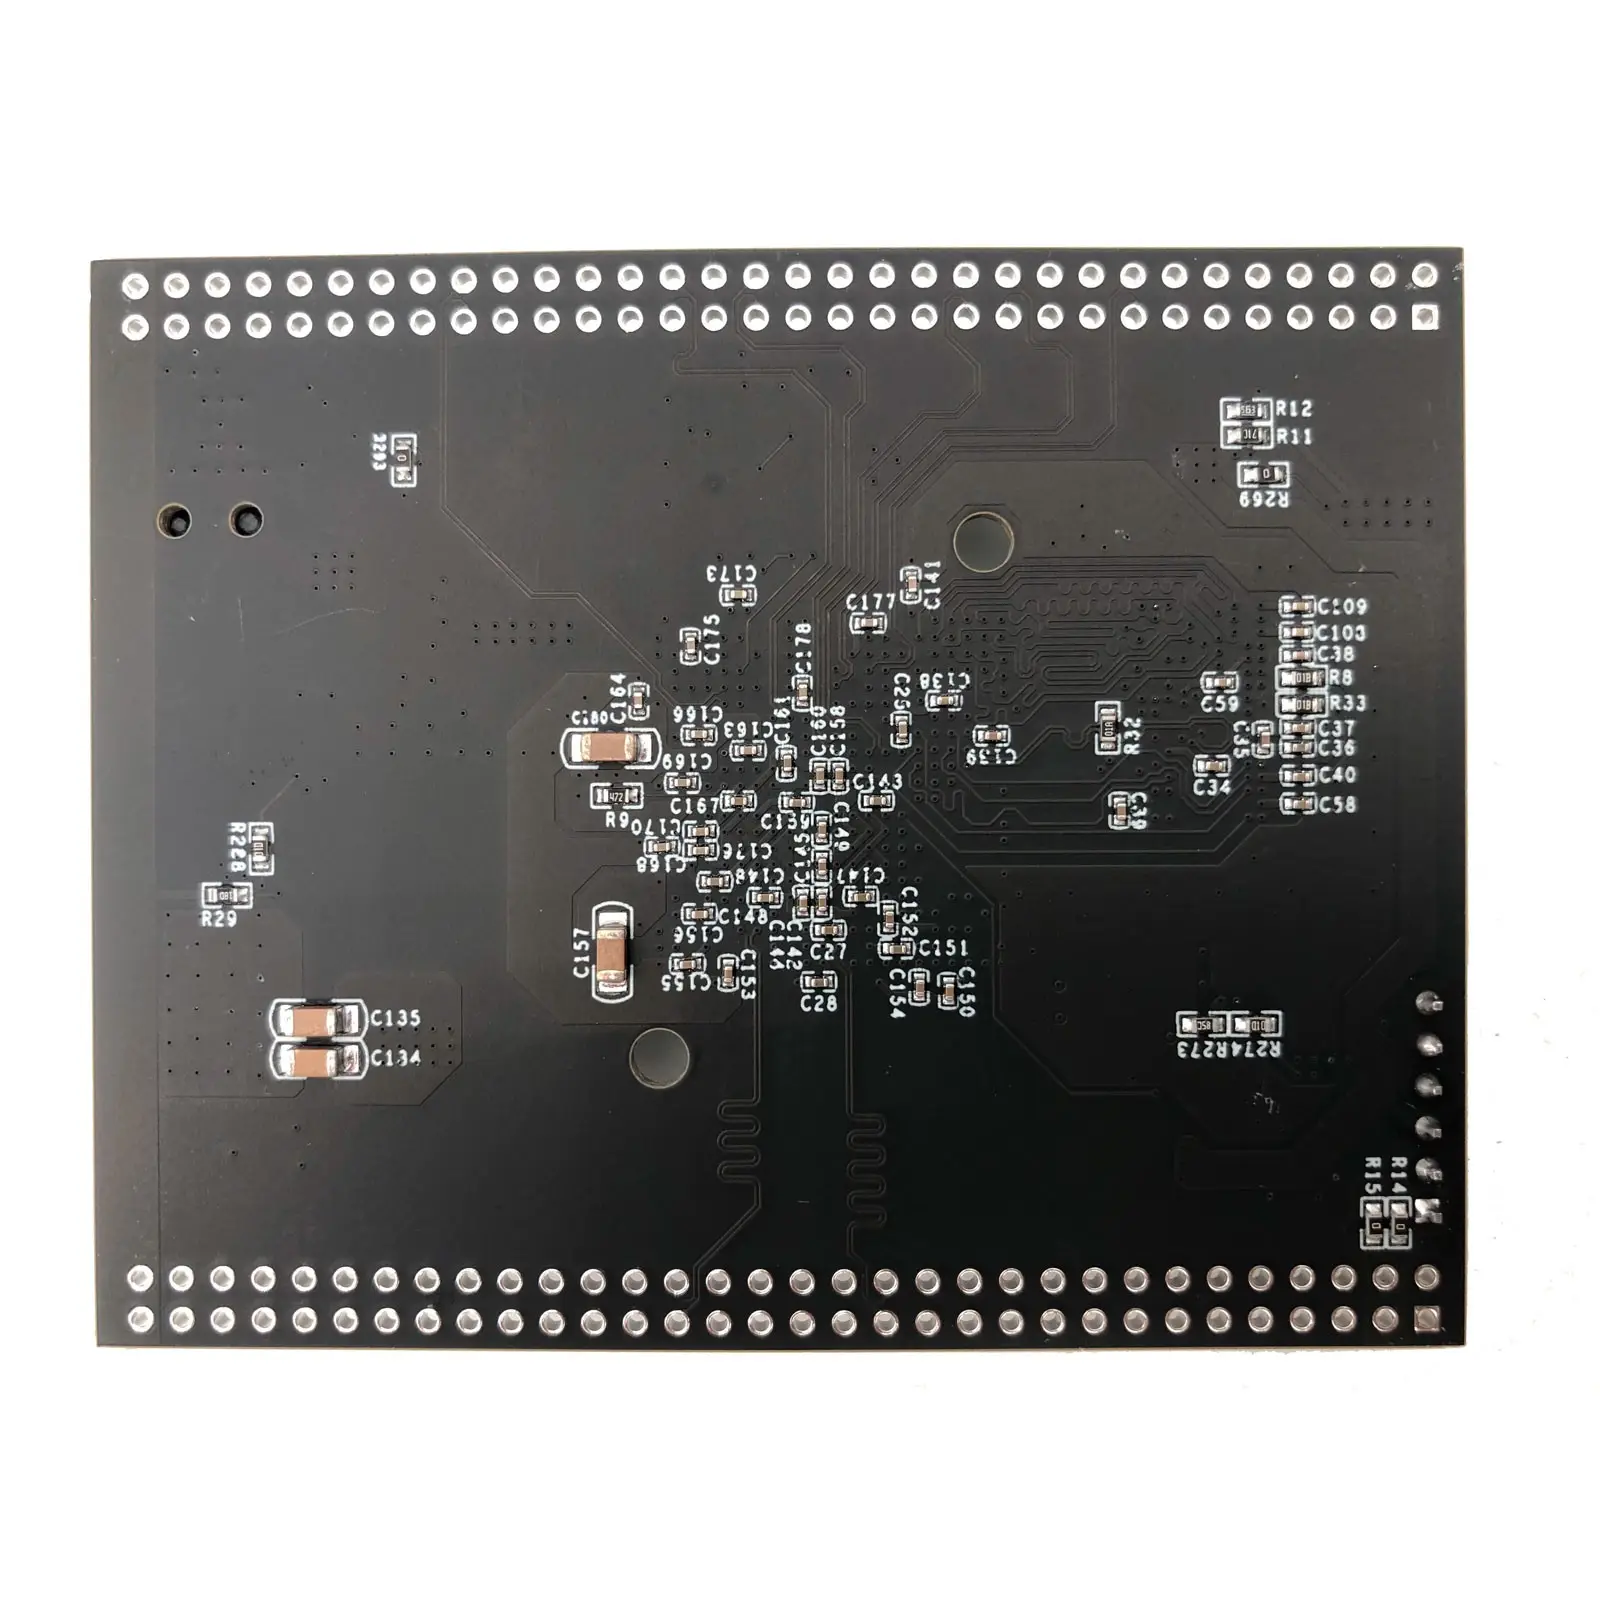 QMTECH Artix-7 DDR3 XC7A35T Núcleo Board A7 FPGA Conselho de Desenvolvimento para os usuários terminarem projetos DIY